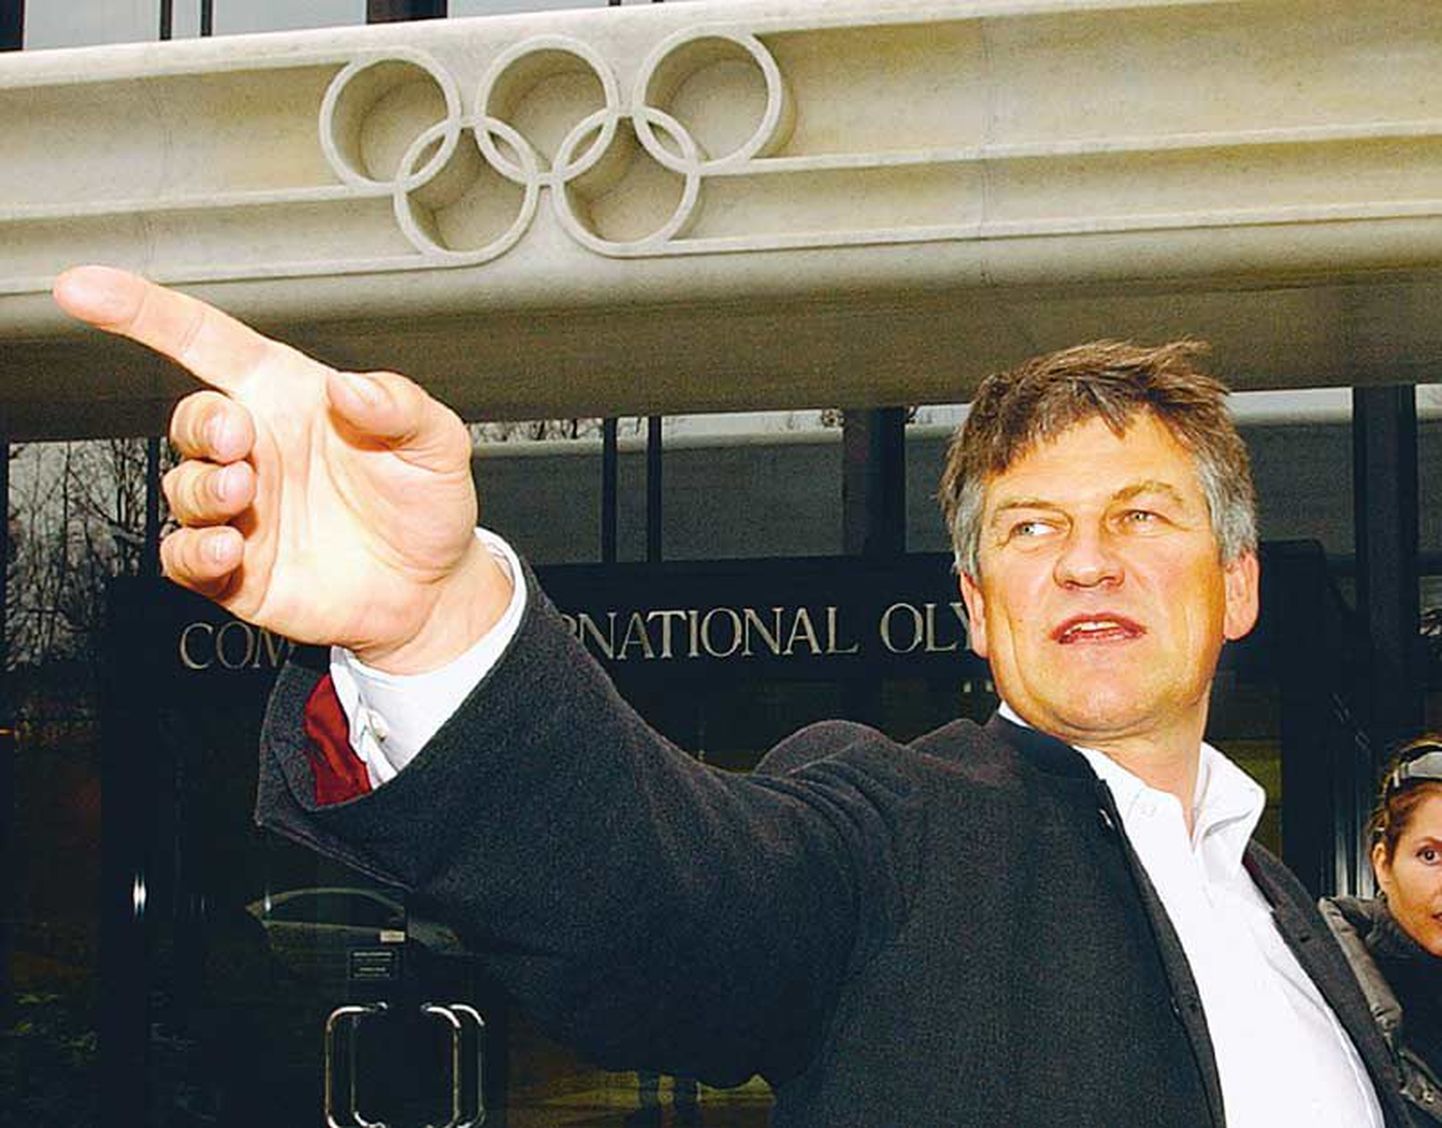 Rahvusvahelise Olümpiakomitee keeldu eirates Torinos tegutsenud Walter Mayer silmi ei peida. Järjekordses dopinguafääris kahtlustatav endine treener on lubanud ROKi presidendi kohtusse kaevata.